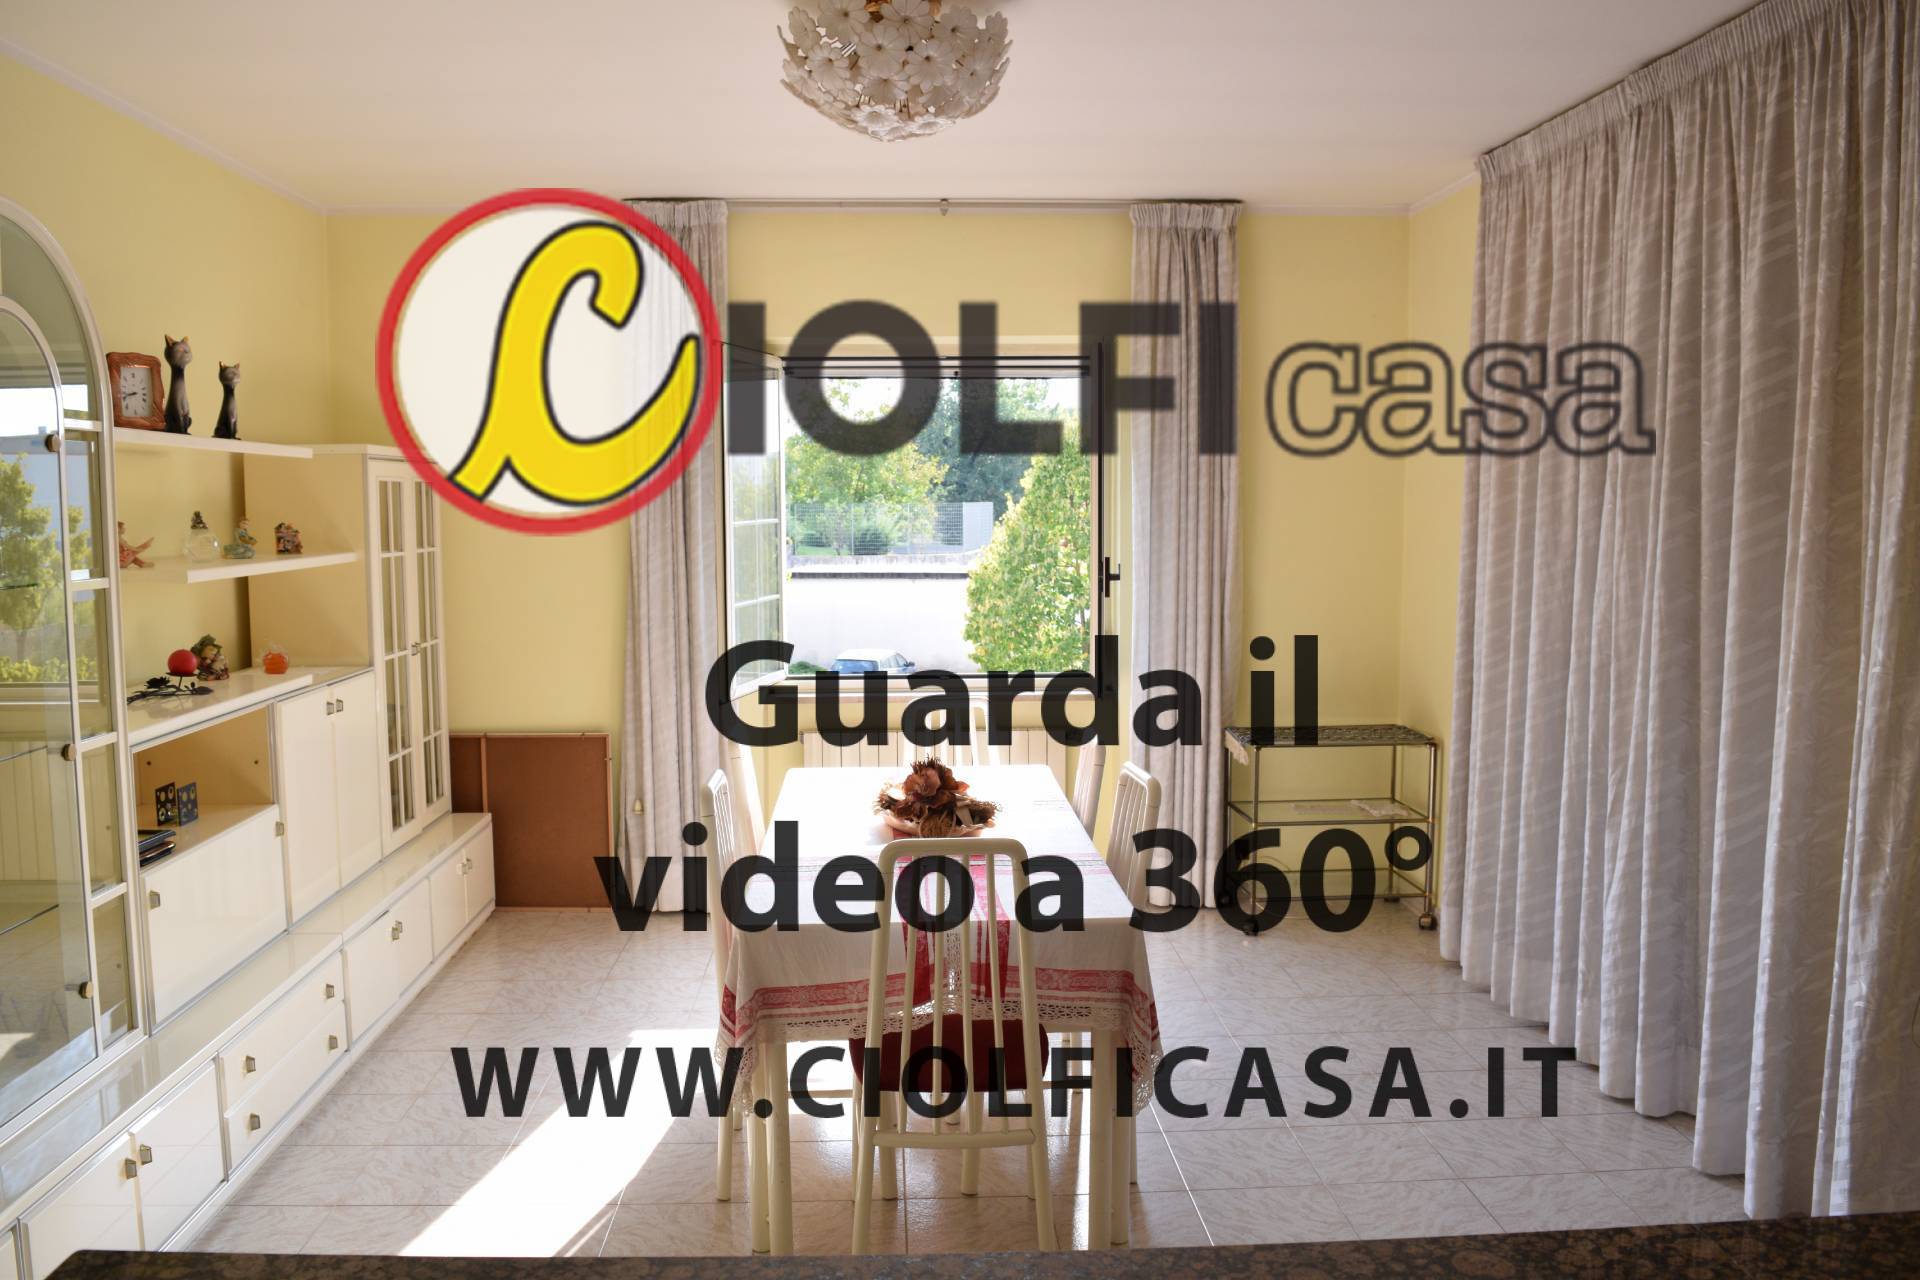 Appartamento in affitto a Cassino, 4 locali, zona Località: ViaSolfegnaCantoni, prezzo € 400 | CambioCasa.it